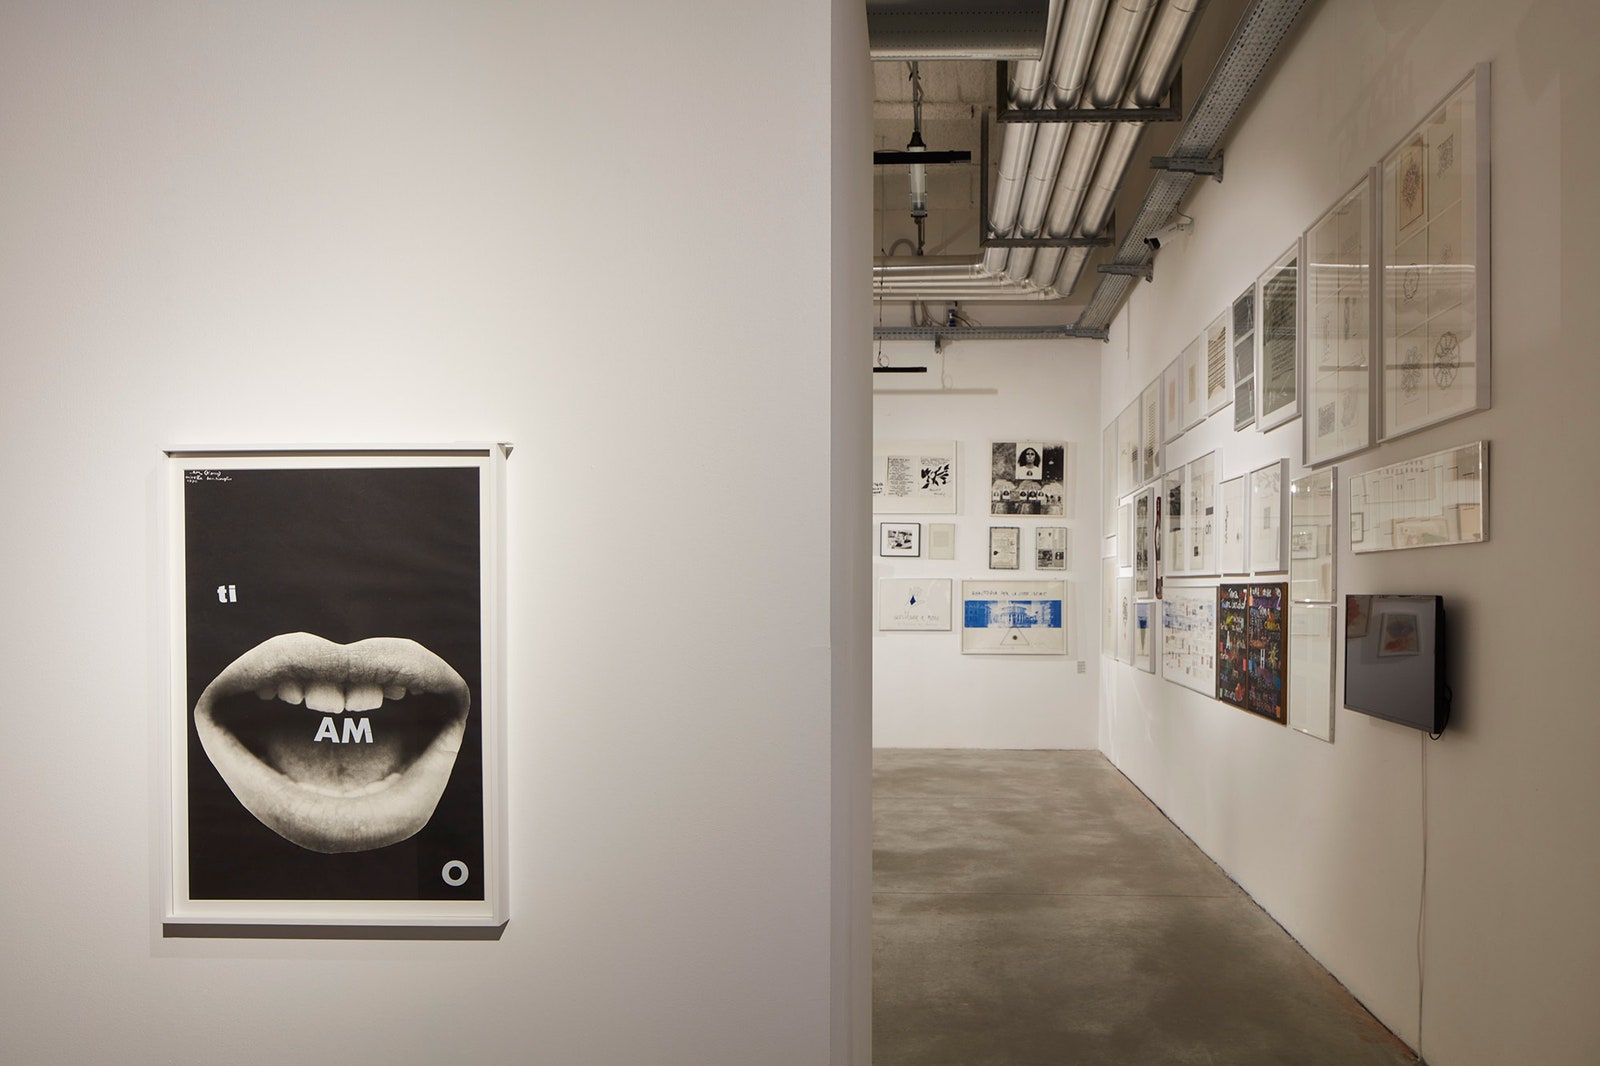 Художественная выставка в миланском Центре современного искусства